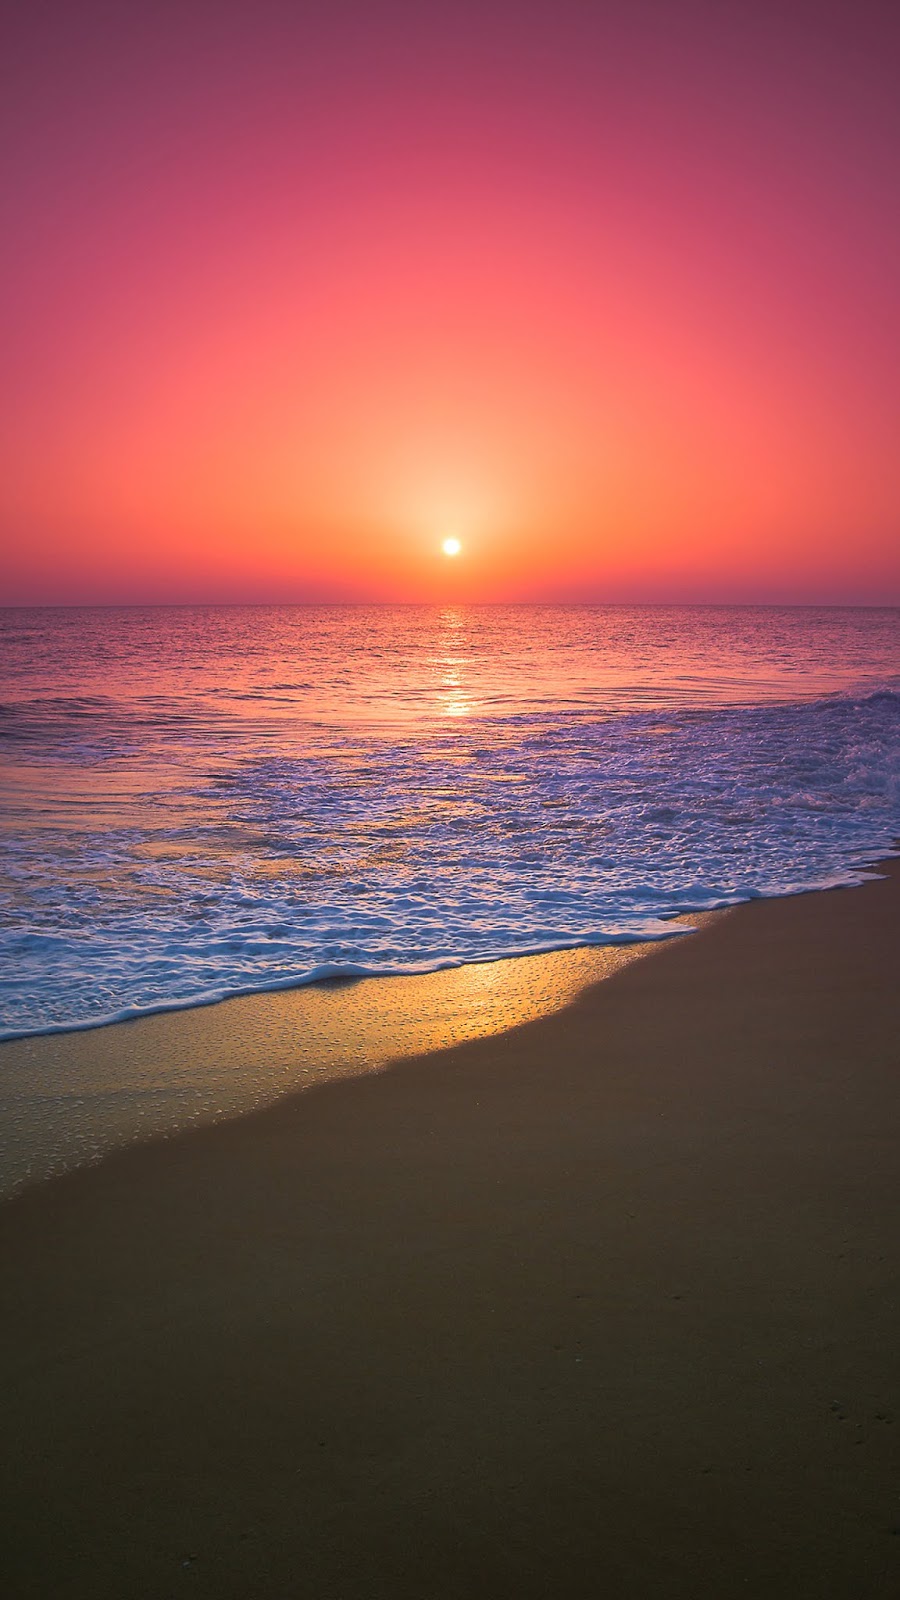 Sunset Aesthetic : aesthetic sunset in the beach - Sunset wallpaper sky